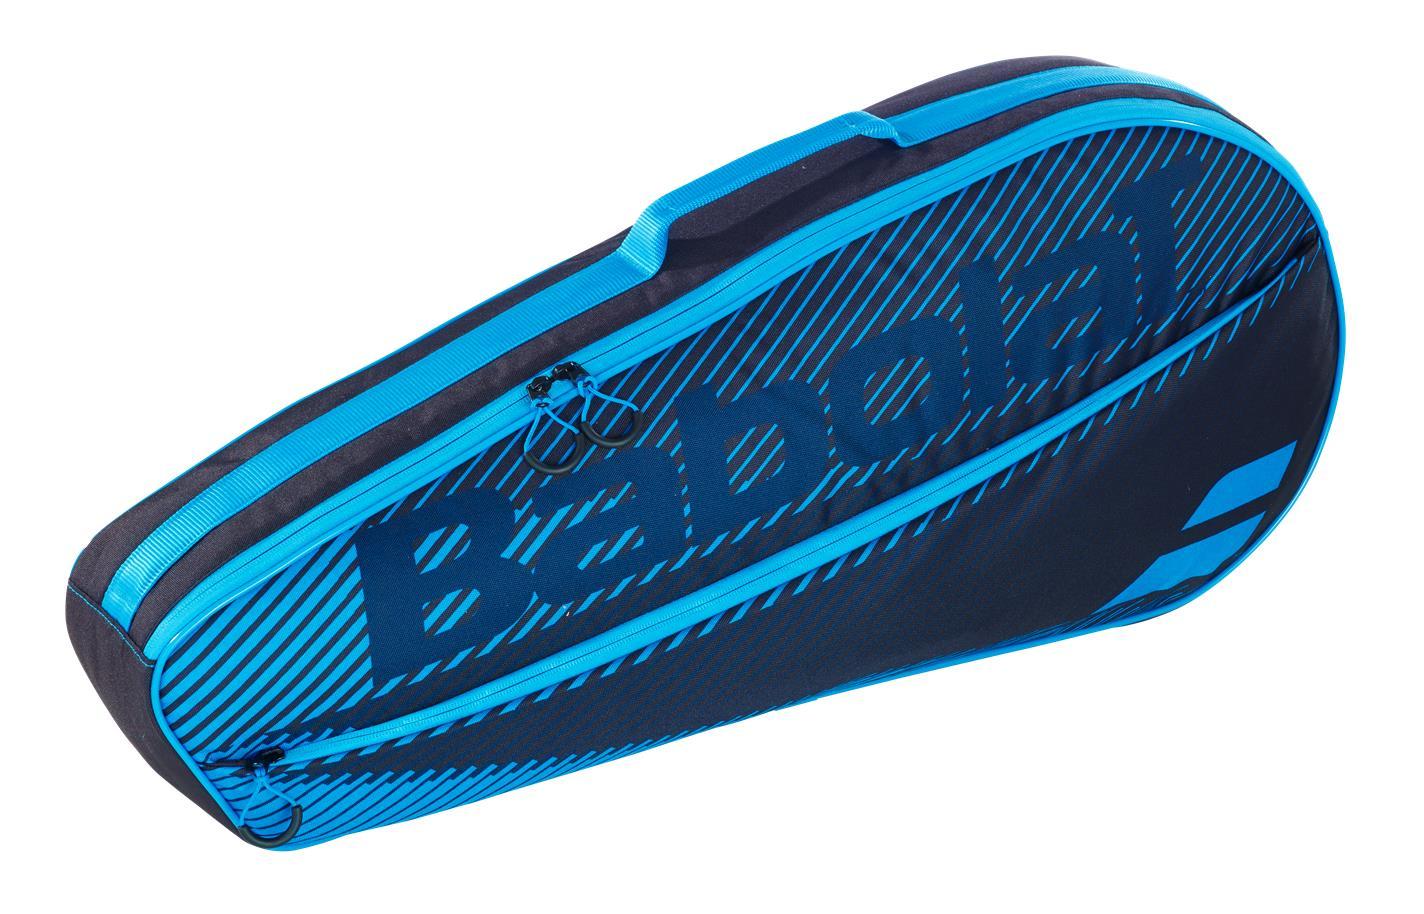 Buy Tourna Grip Standard Pack De 10 Azul online